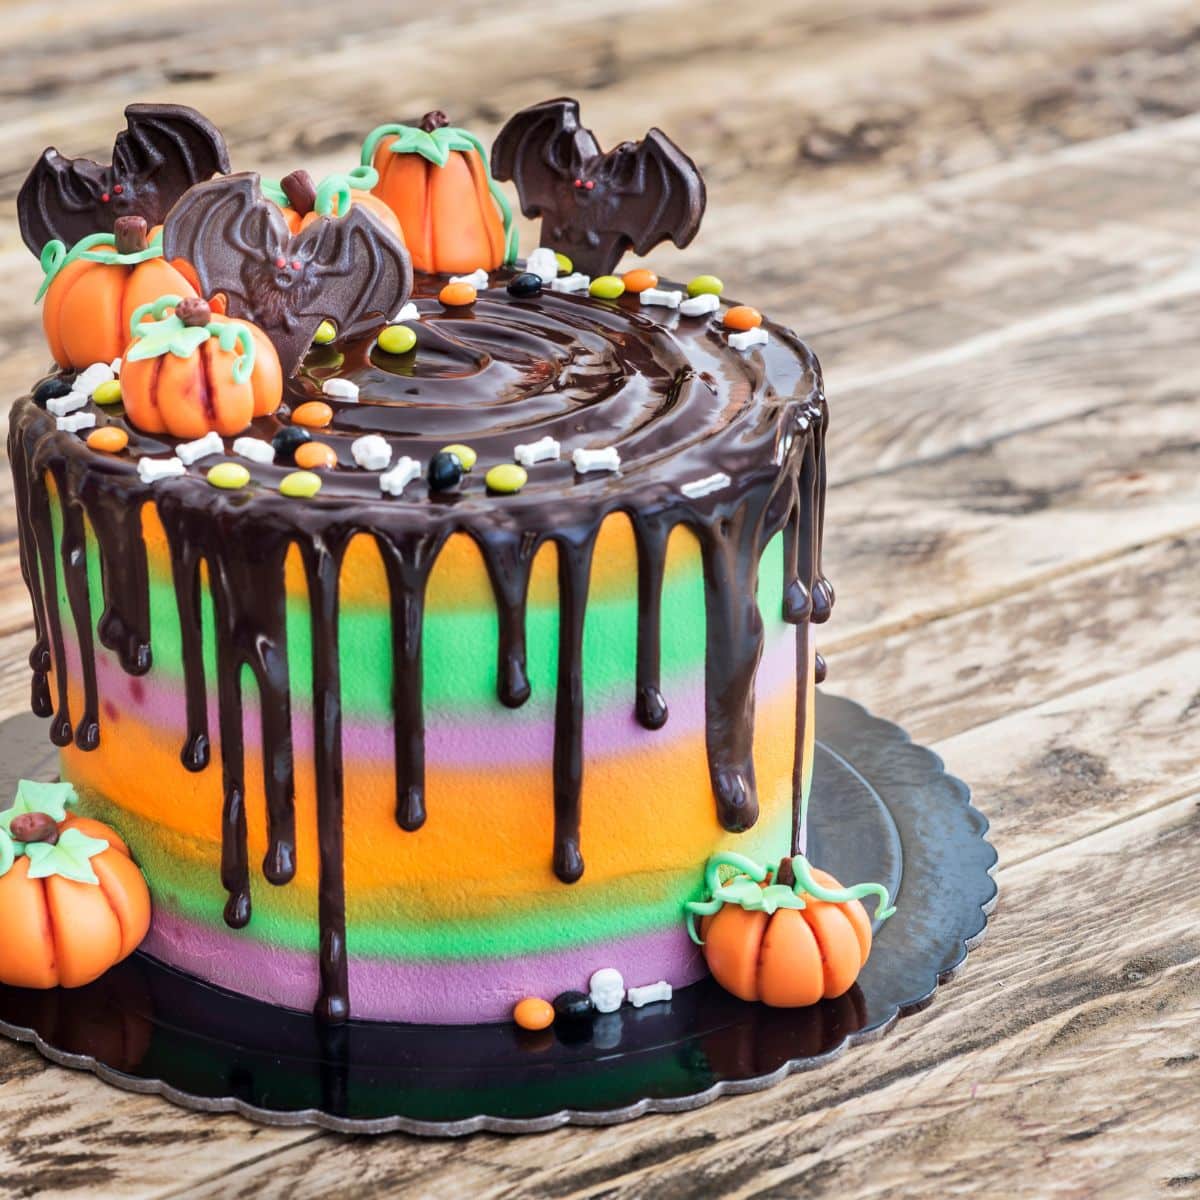 Ide kue Halloween terbaik untuk dibuat untuk pesta bertema seram Anda.